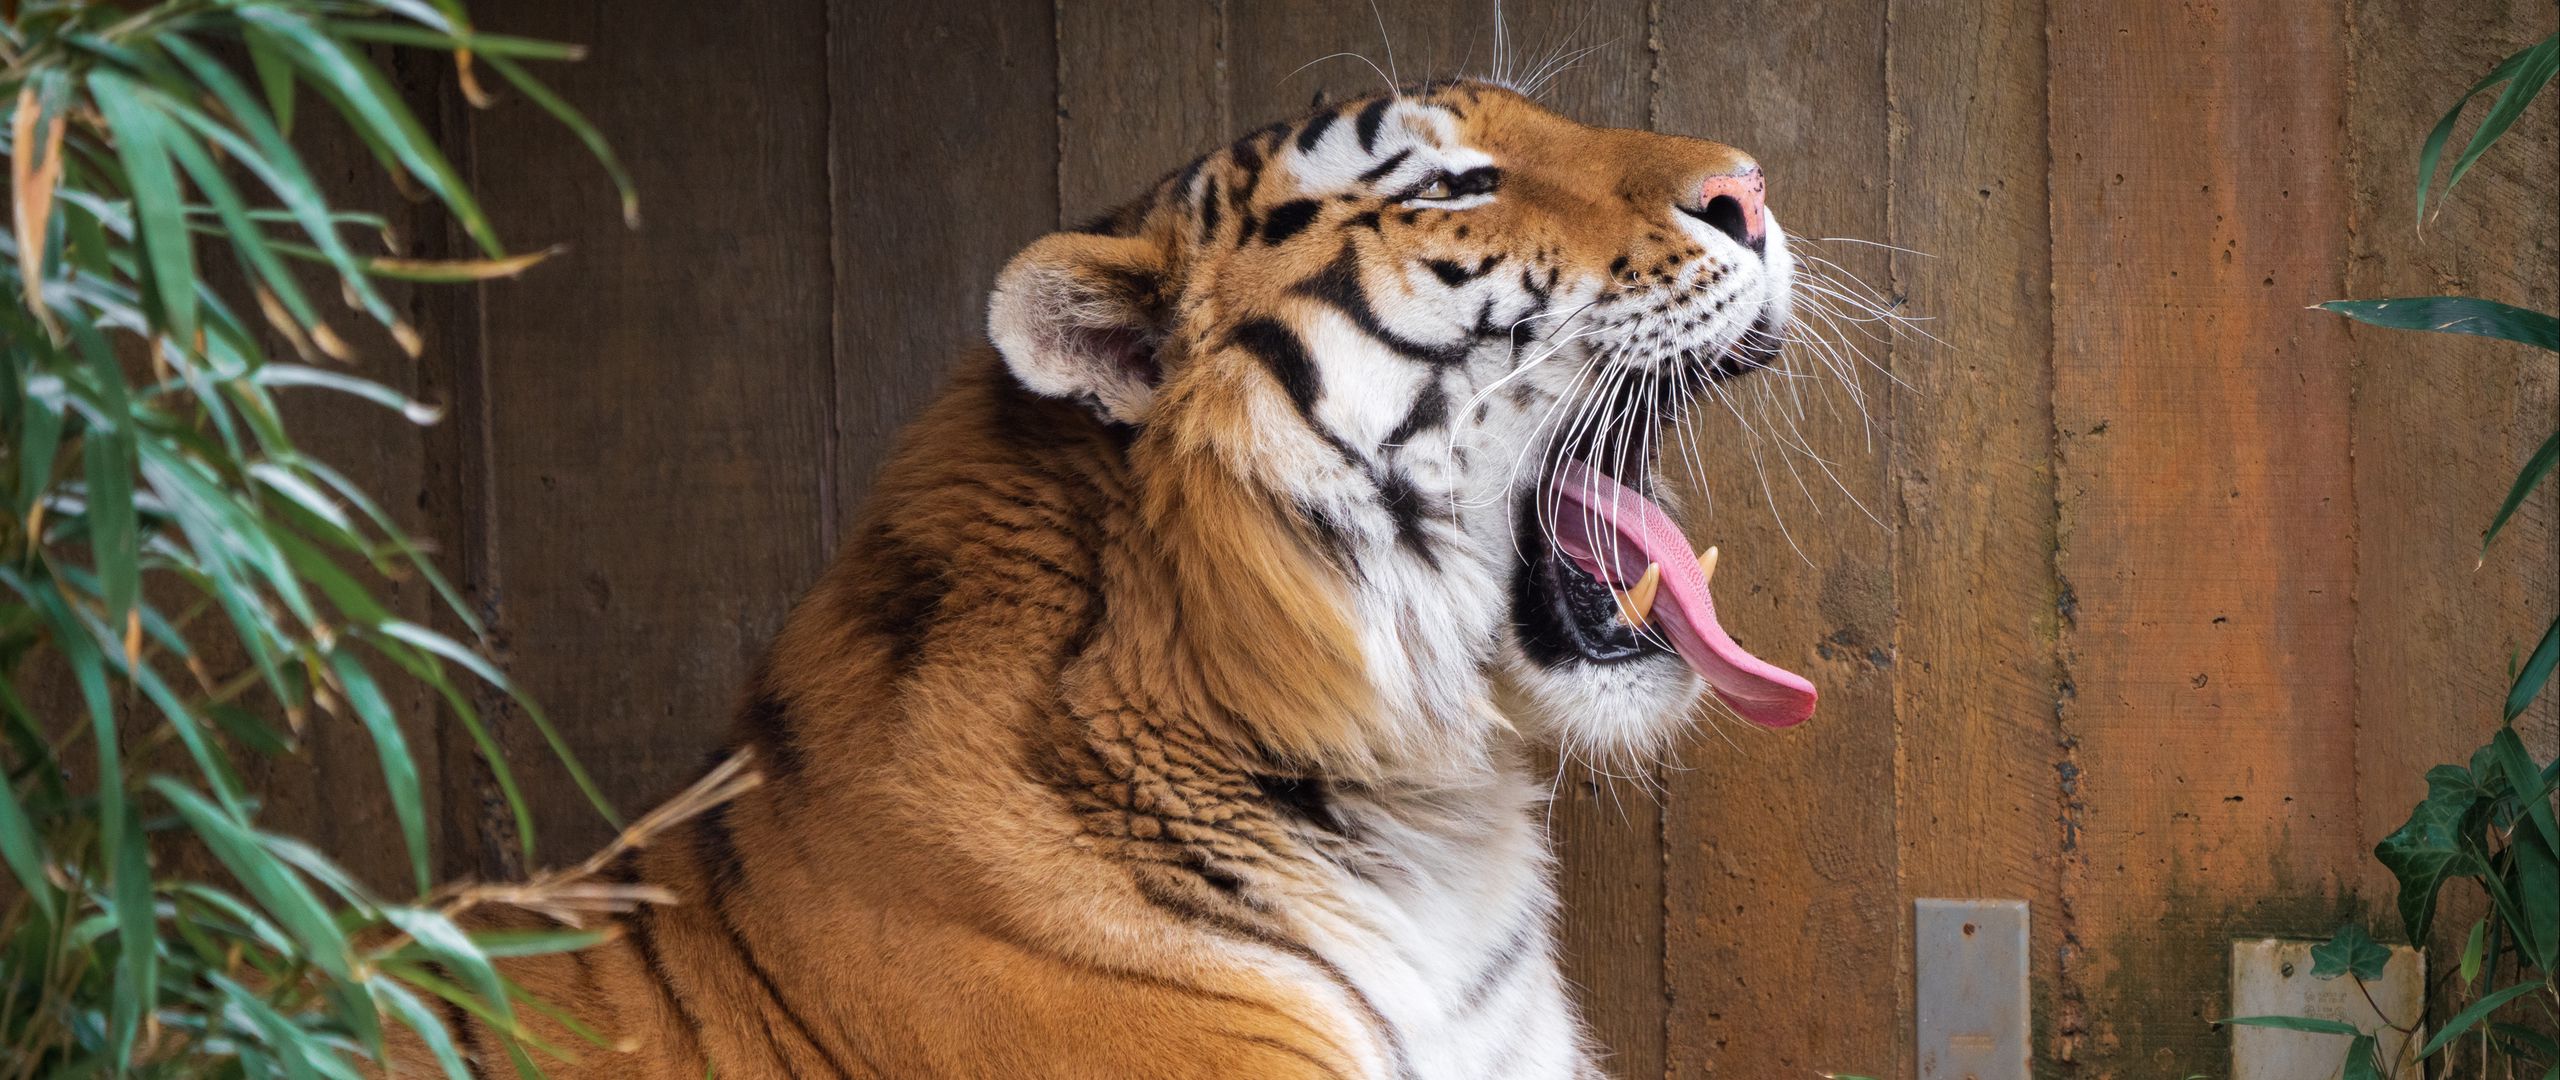 Wallpaper Tiger yawning